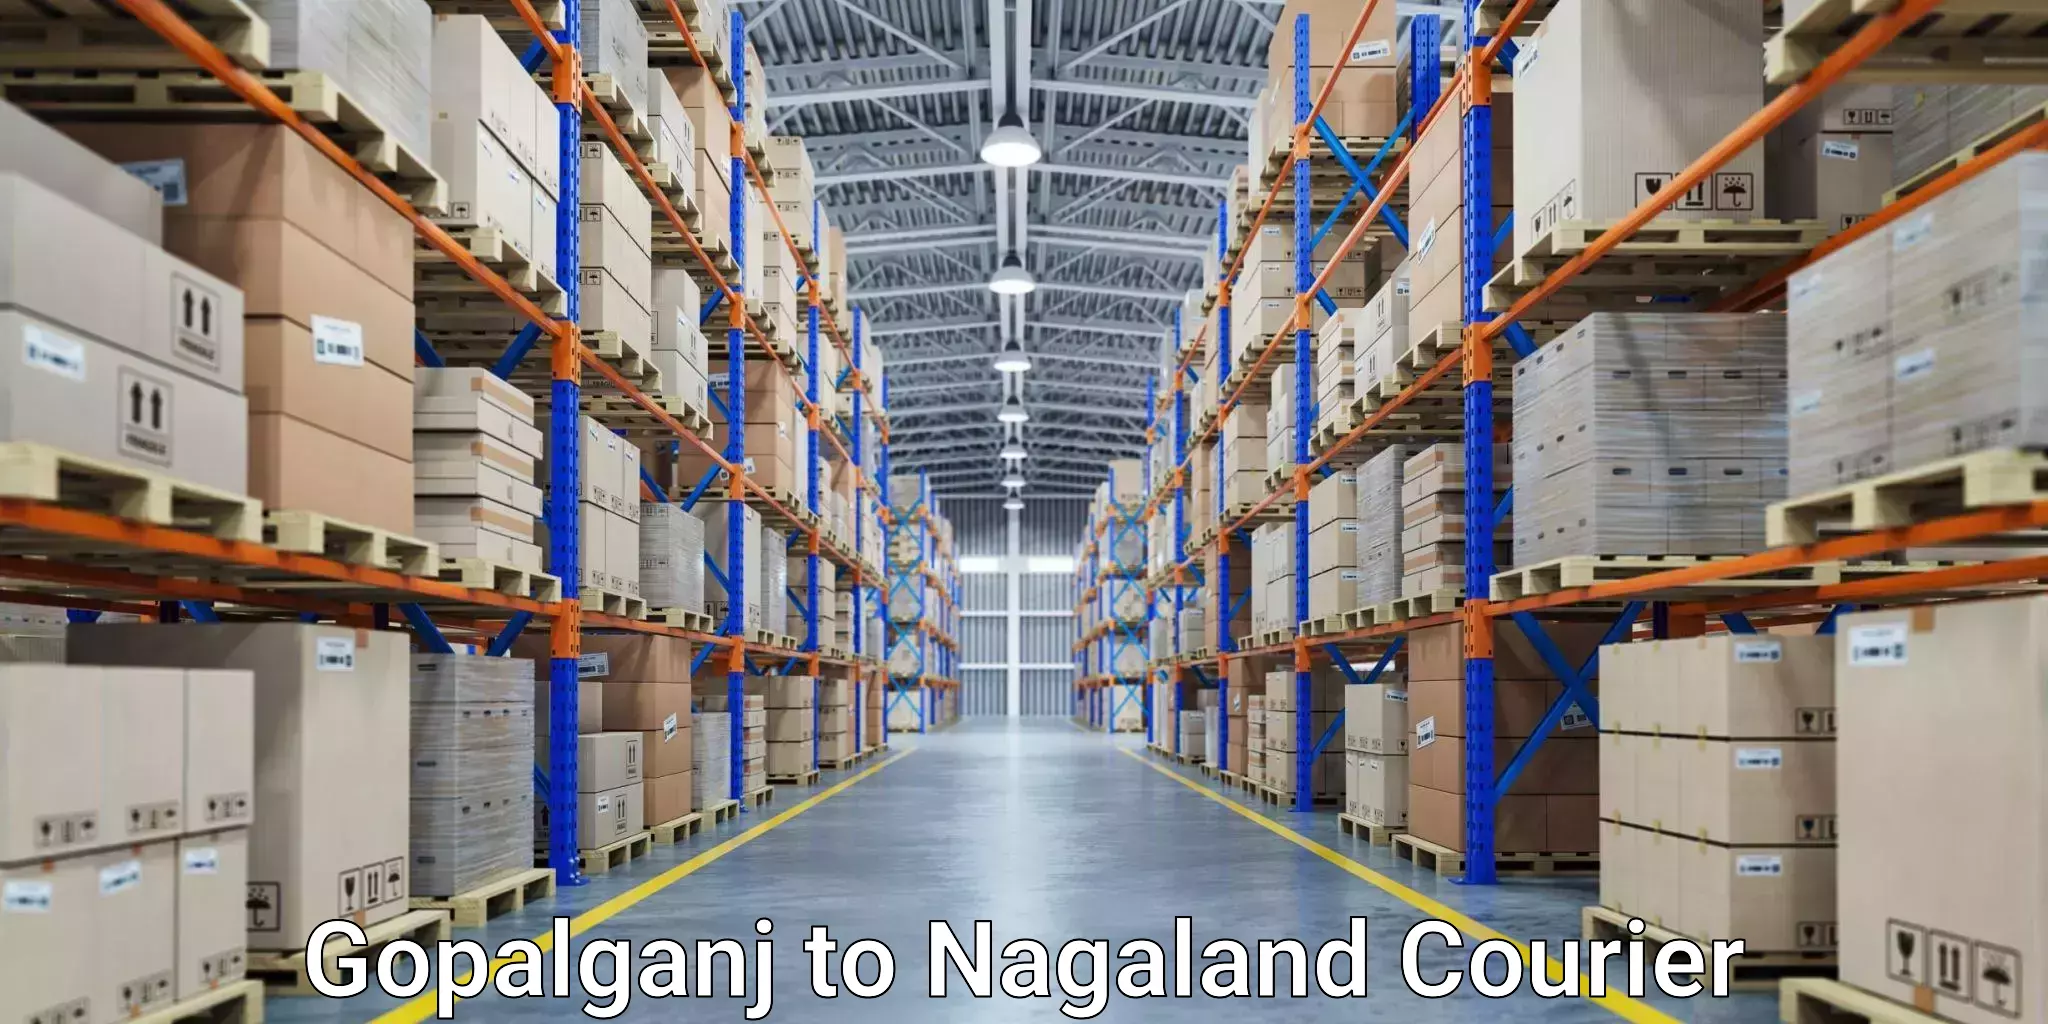 Courier service comparison Gopalganj to Nagaland